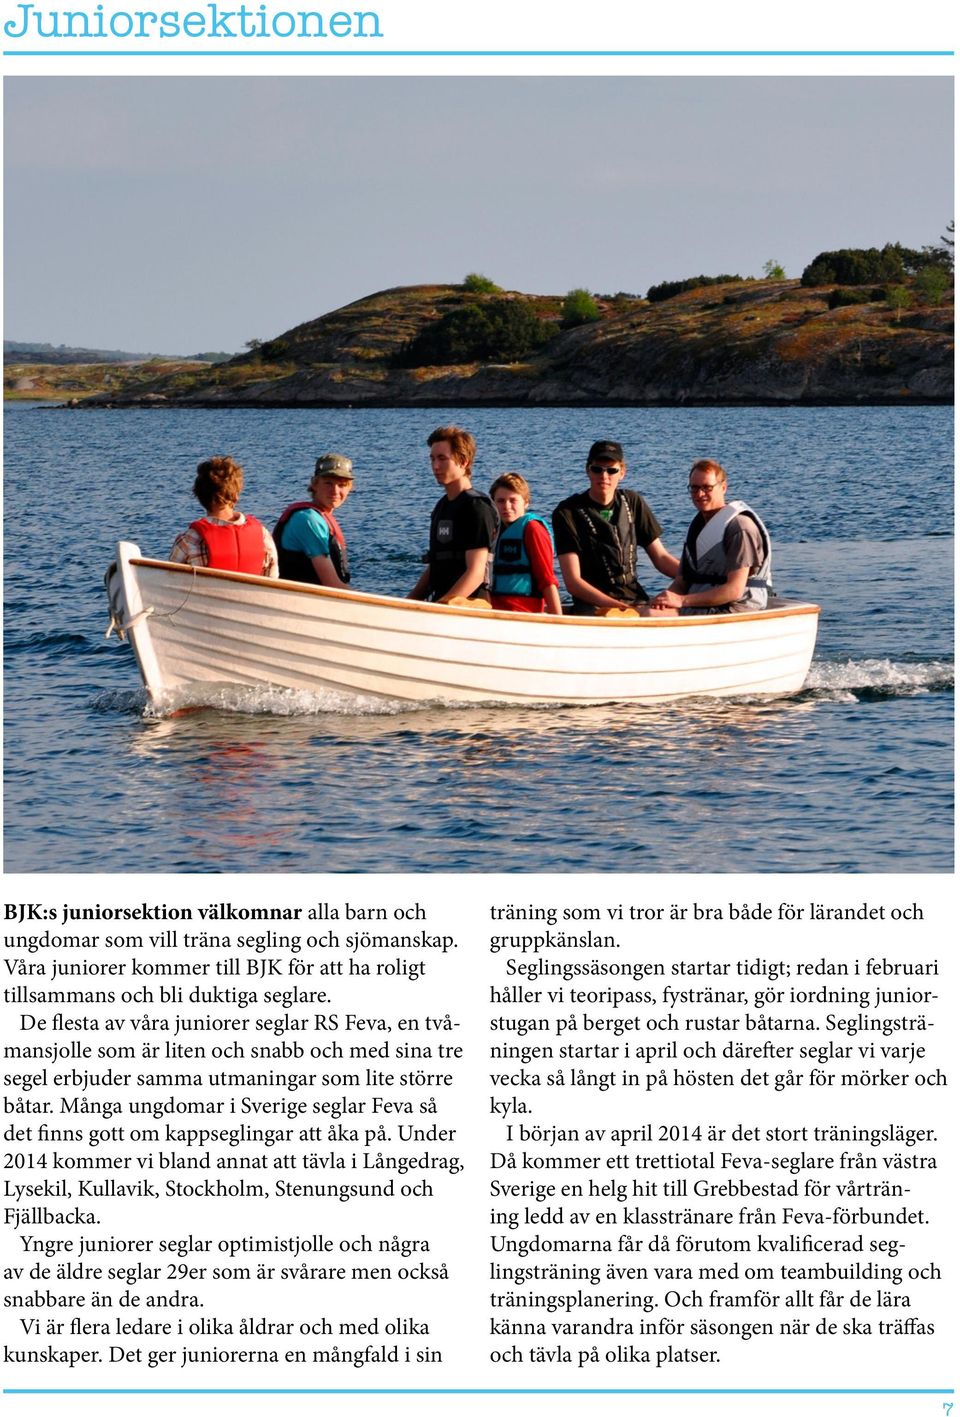 Många ungdomar i Sverige seglar Feva så det finns gott om kappseglingar att åka på. Under 2014 kommer vi bland annat att tävla i Långedrag, Lysekil, Kullavik, Stockholm, Stenungsund och Fjällbacka.